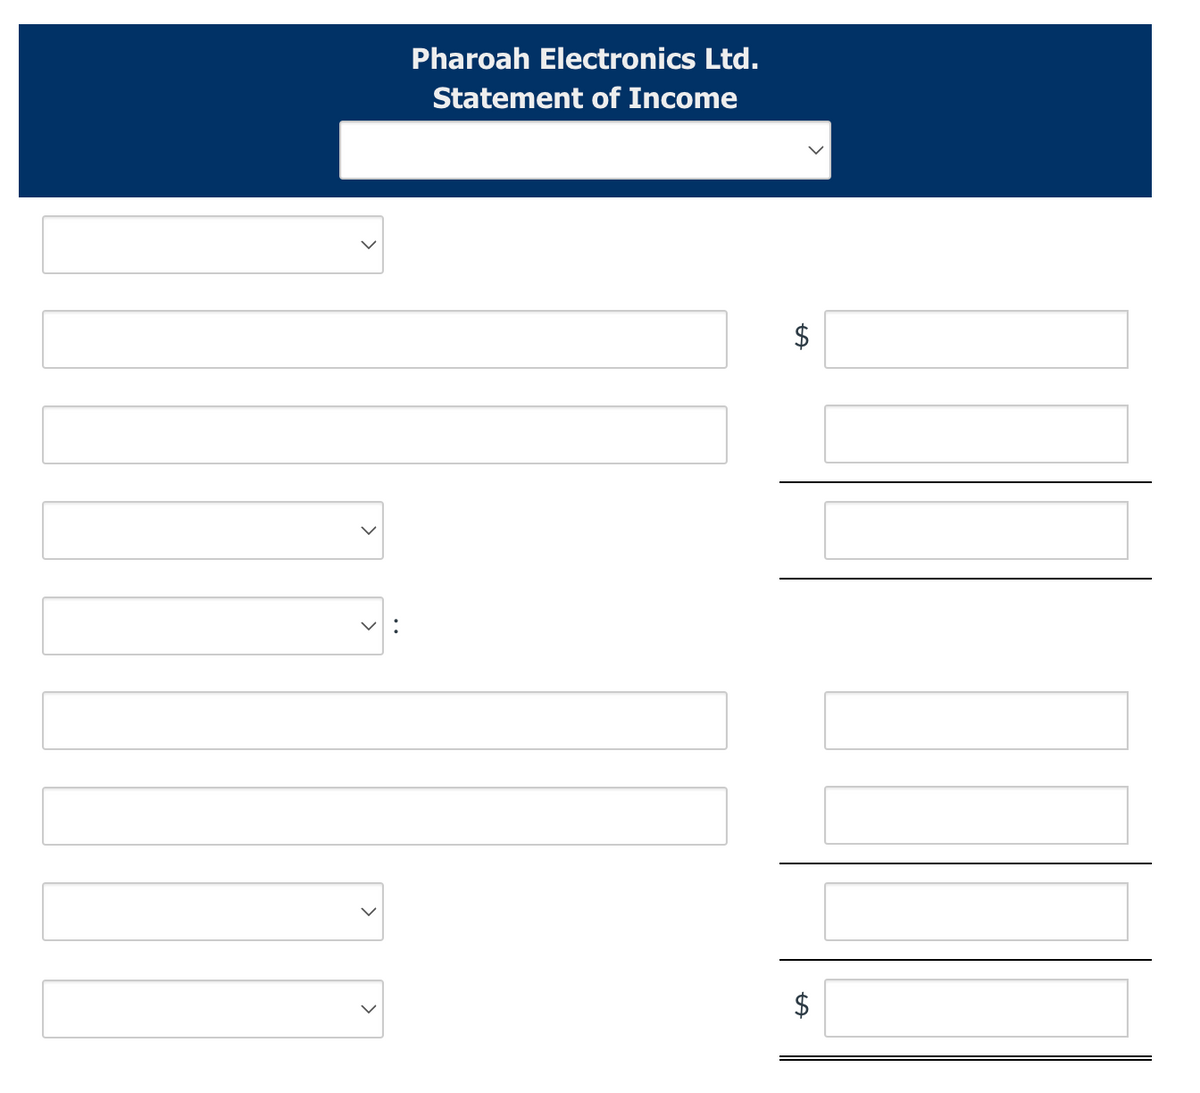 V:
Pharoah Electronics Ltd.
Statement of Income
$
+A